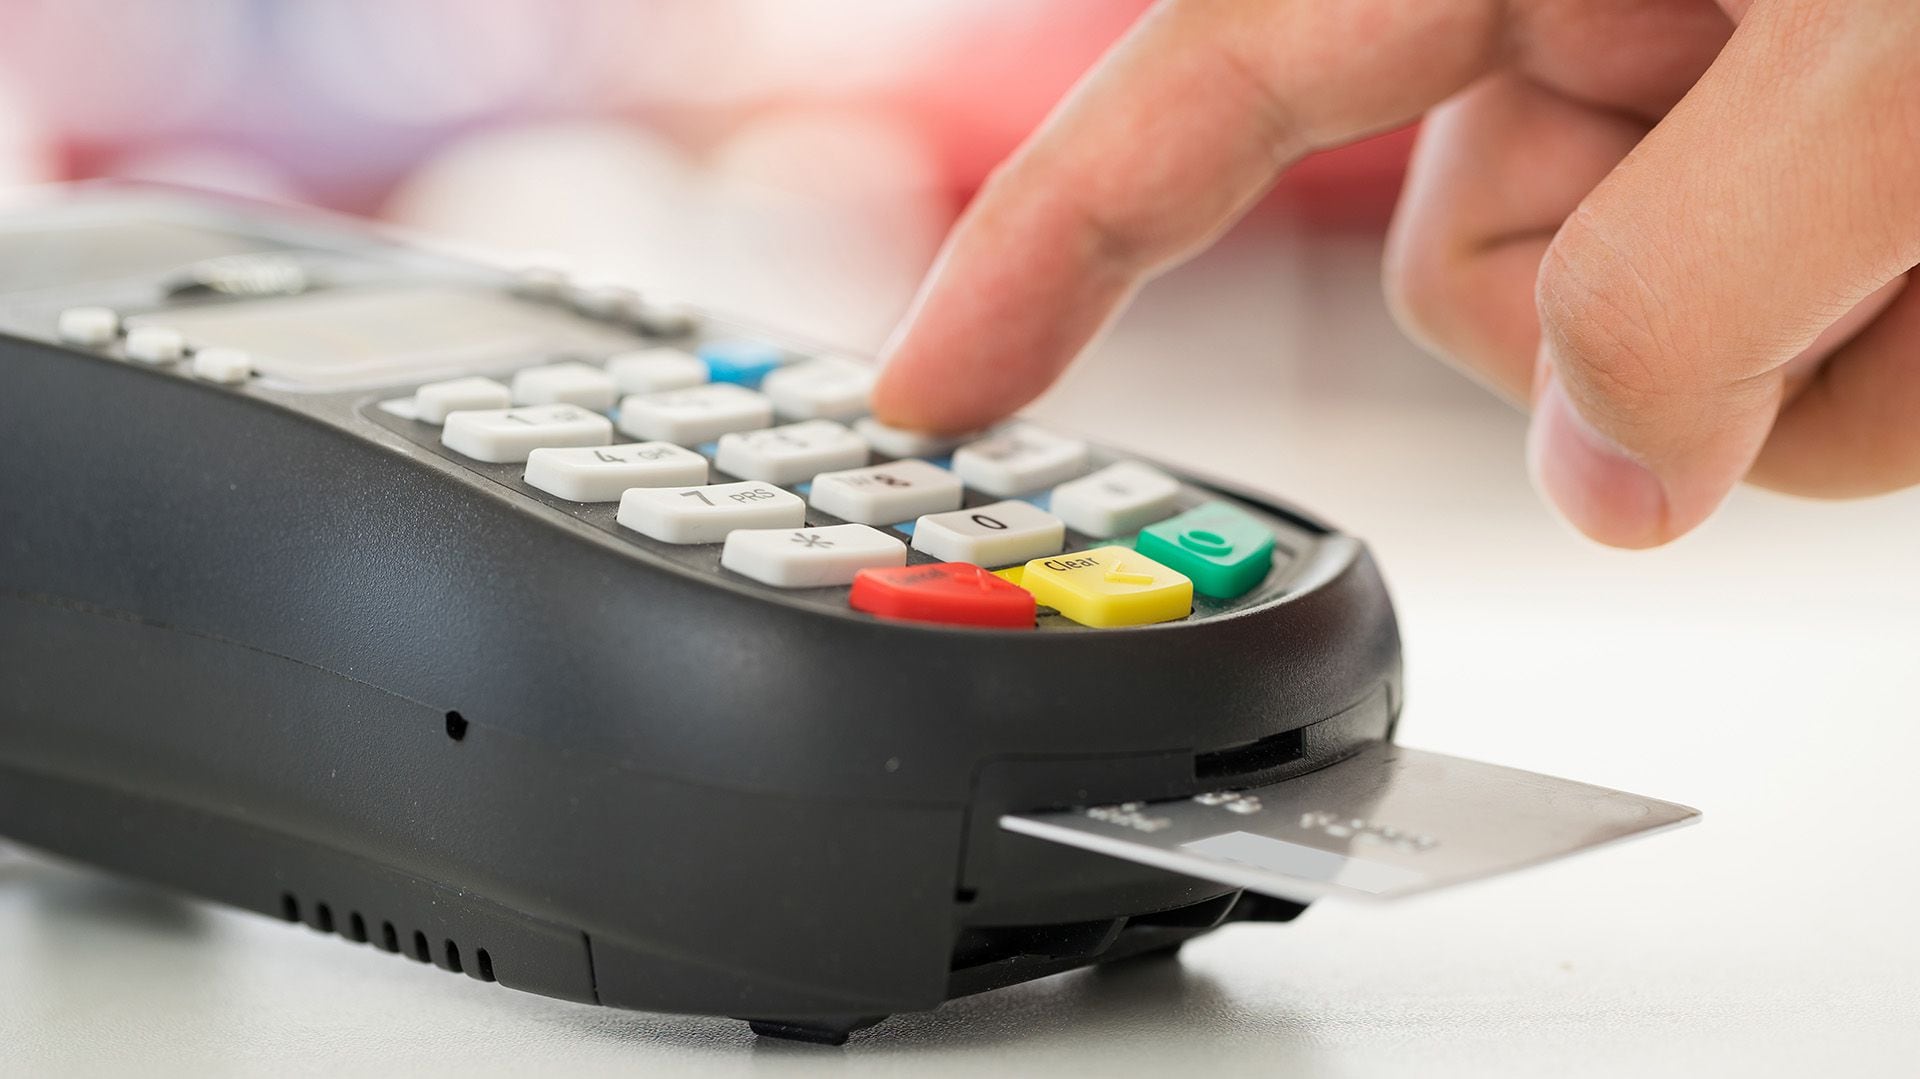 En Uruguay, conviene pagar con tarjeta de débito (Shutterstock)